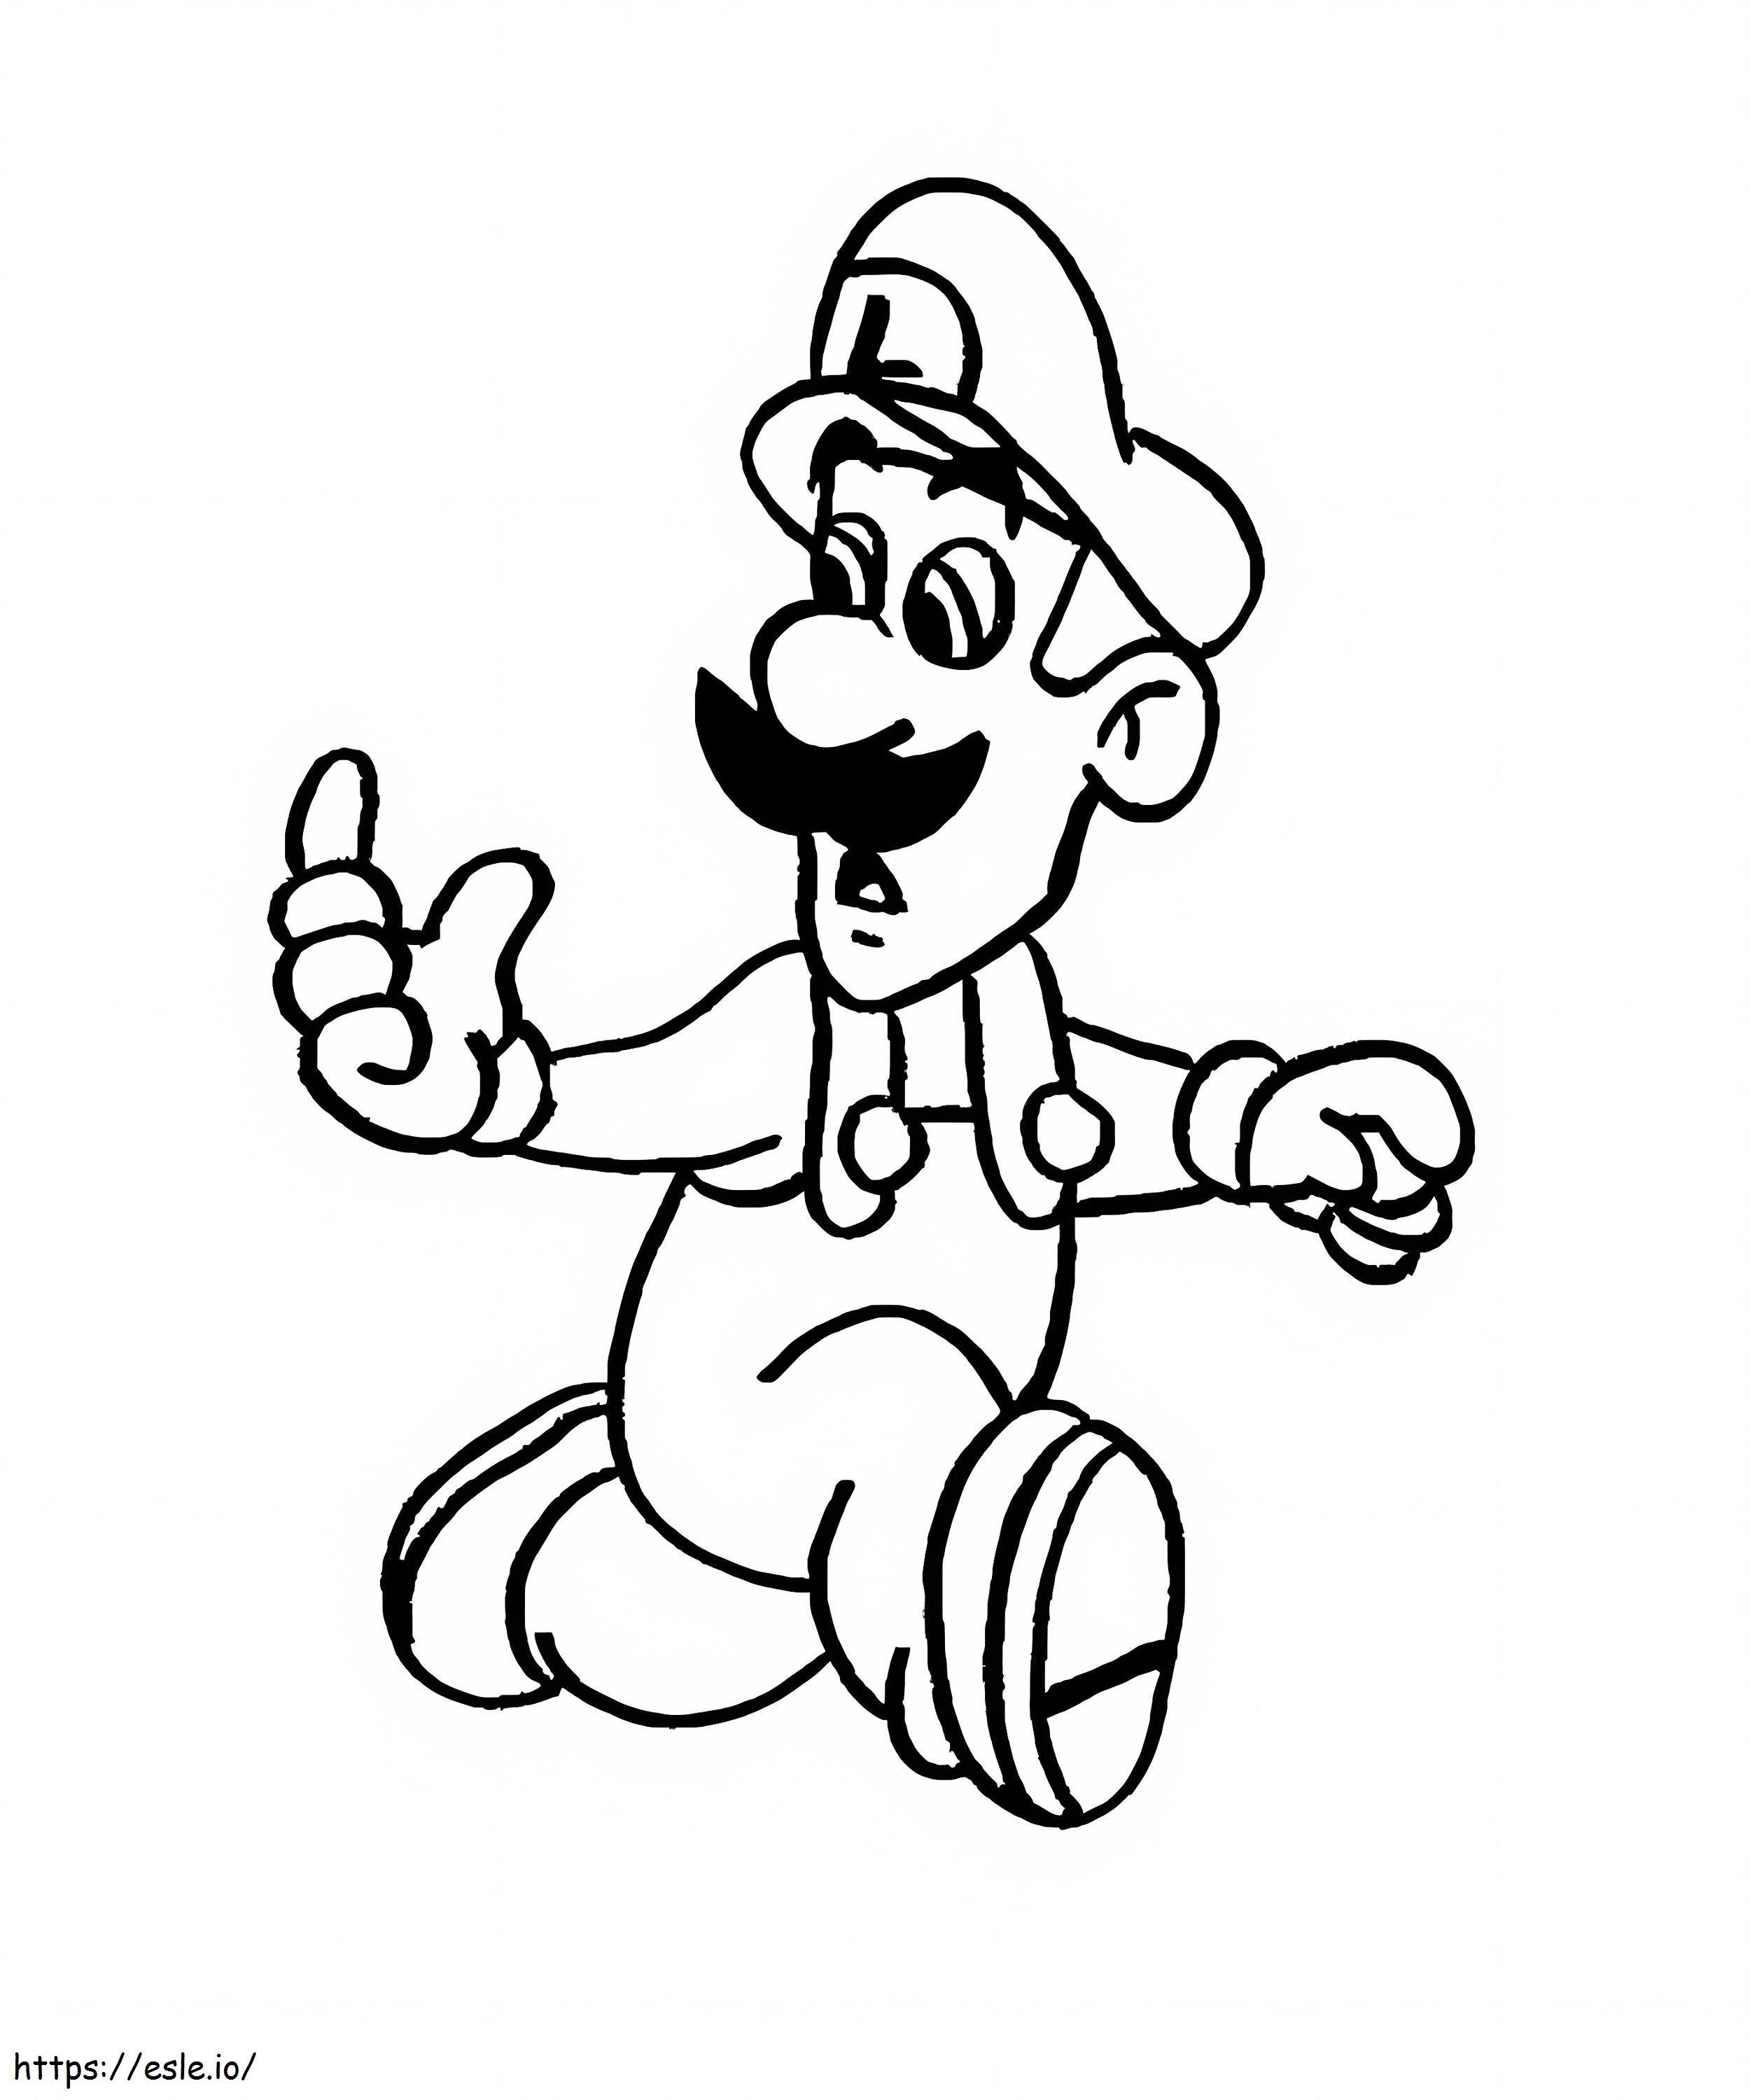 Luigi e il mostro da colorare